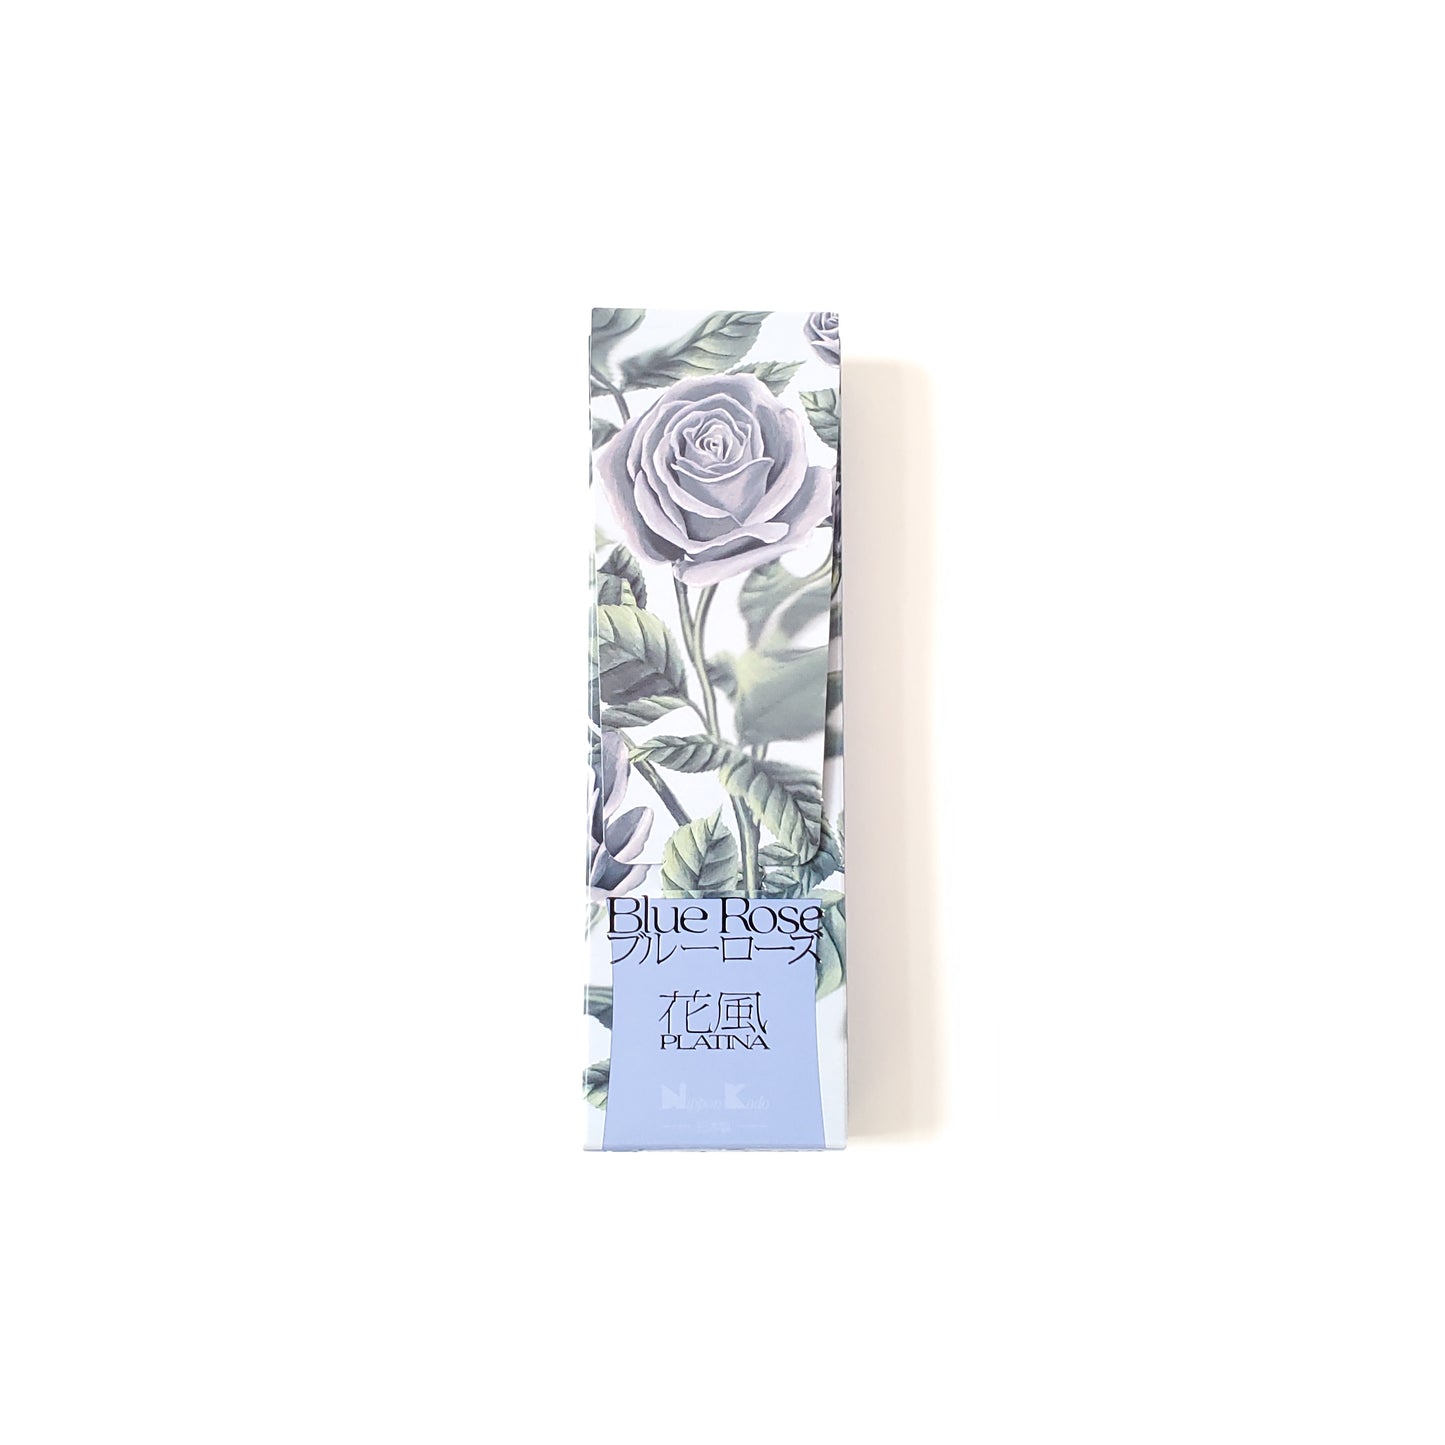 日本香堂 花風PLATINA ブルーローズ Blue Rose 小バラ詰 お香 お線香 インセンス スティック型 incense 日本製 アロマ